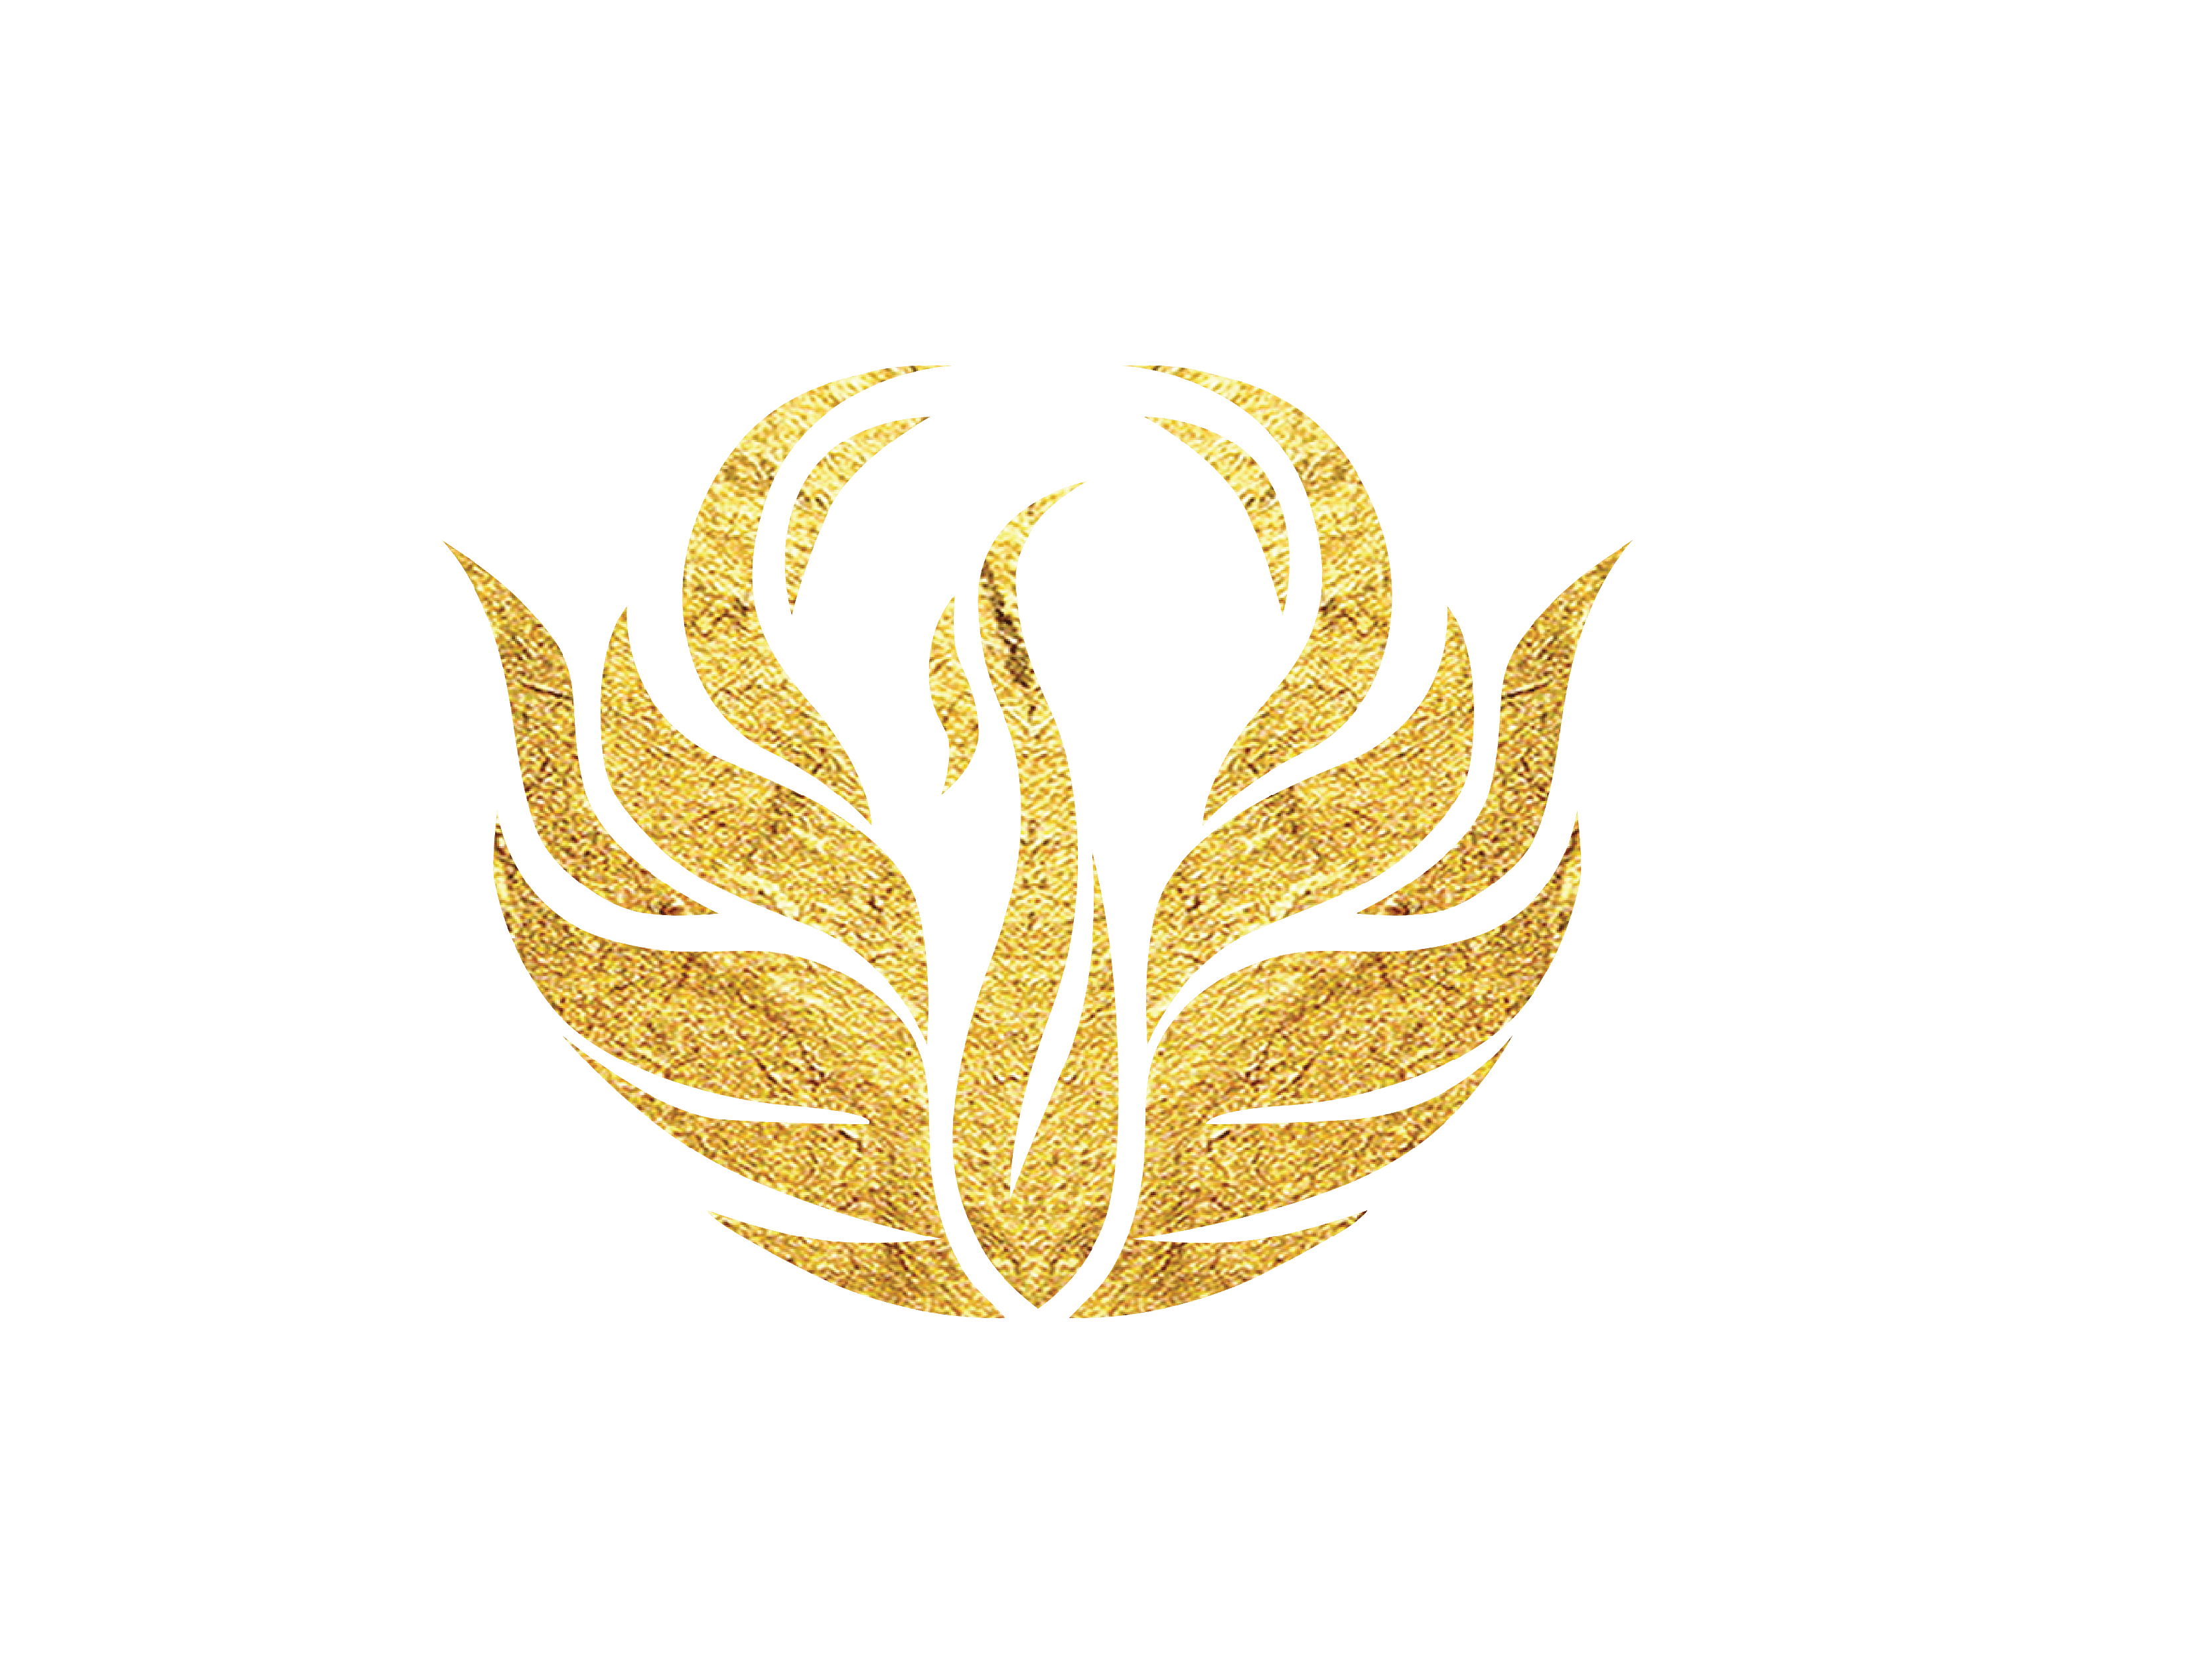 Gold Phoenix Logo - Golden Phoenix Award 2017 Media Coverage. Asia